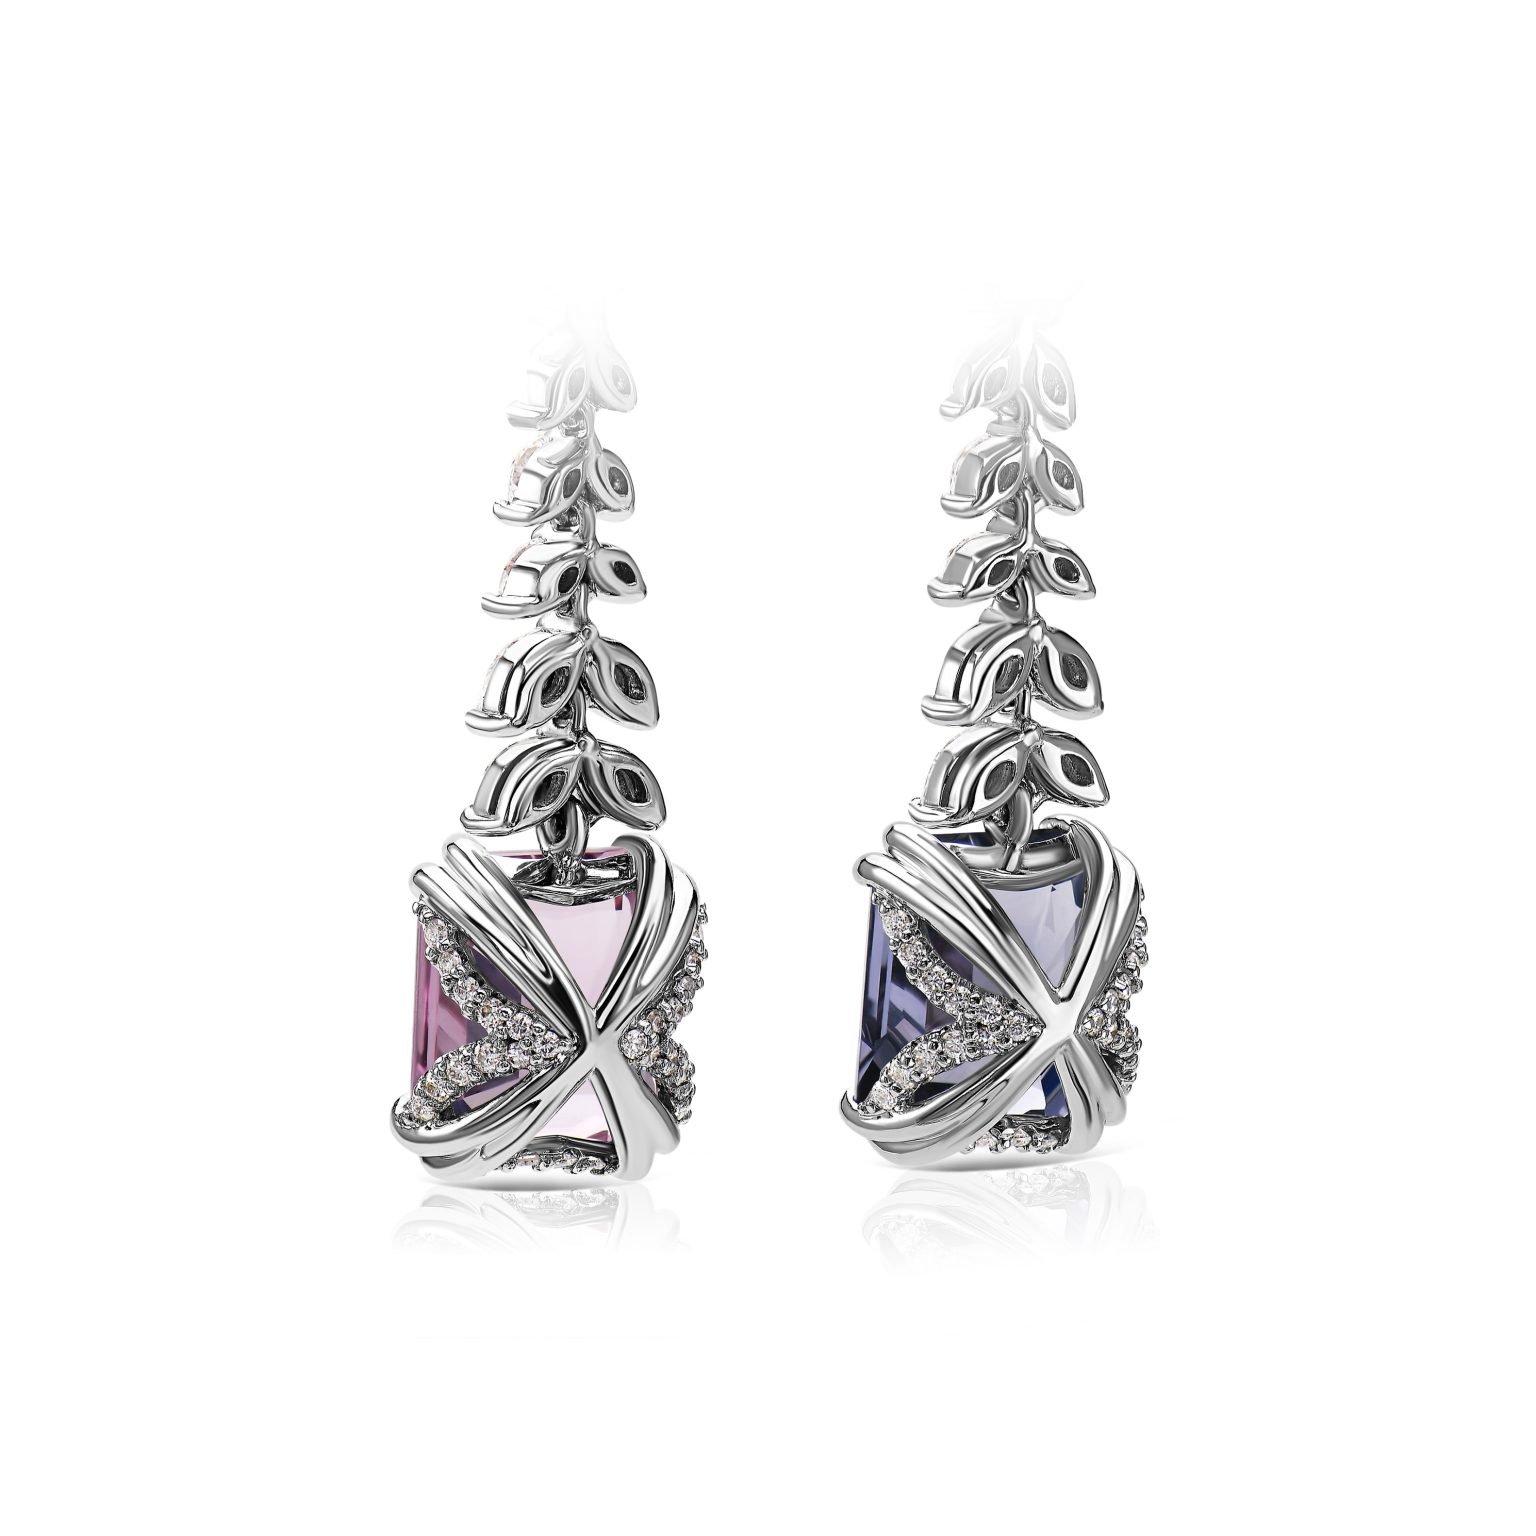 Spinel earrings 4.56 & 4.07 ct